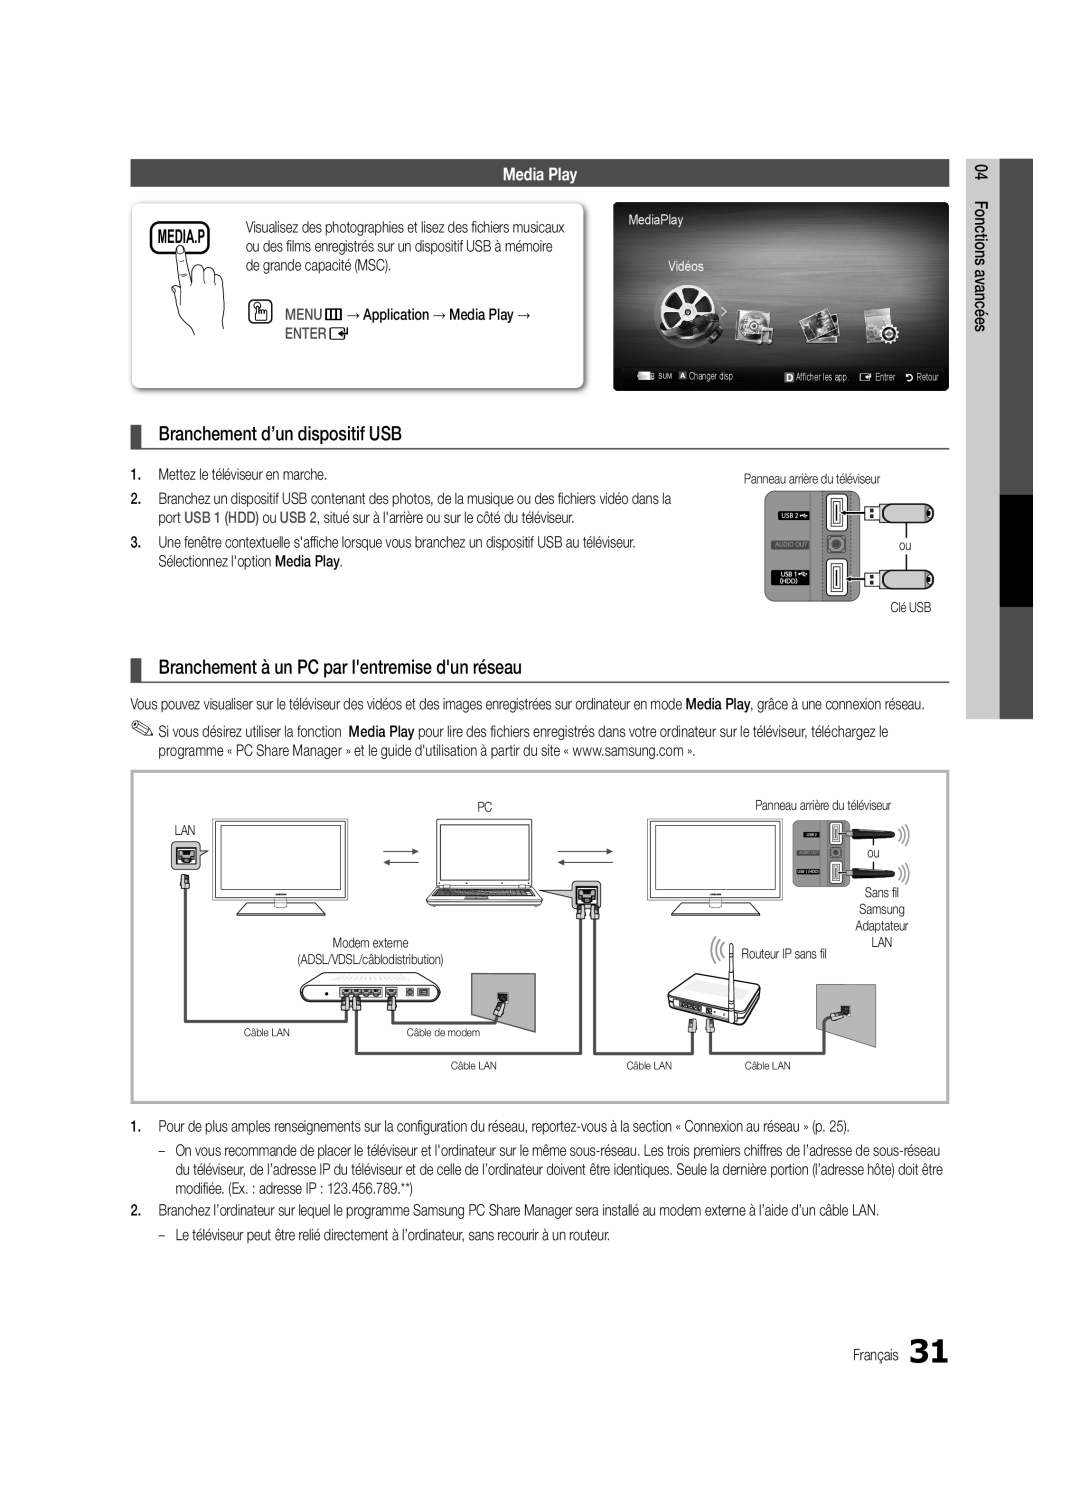 Samsung UC6300-ZC Media.P, Branchement d’un dispositif USB, Branchement à un PC par lentremise dun réseau, Enter E, Vidéos 